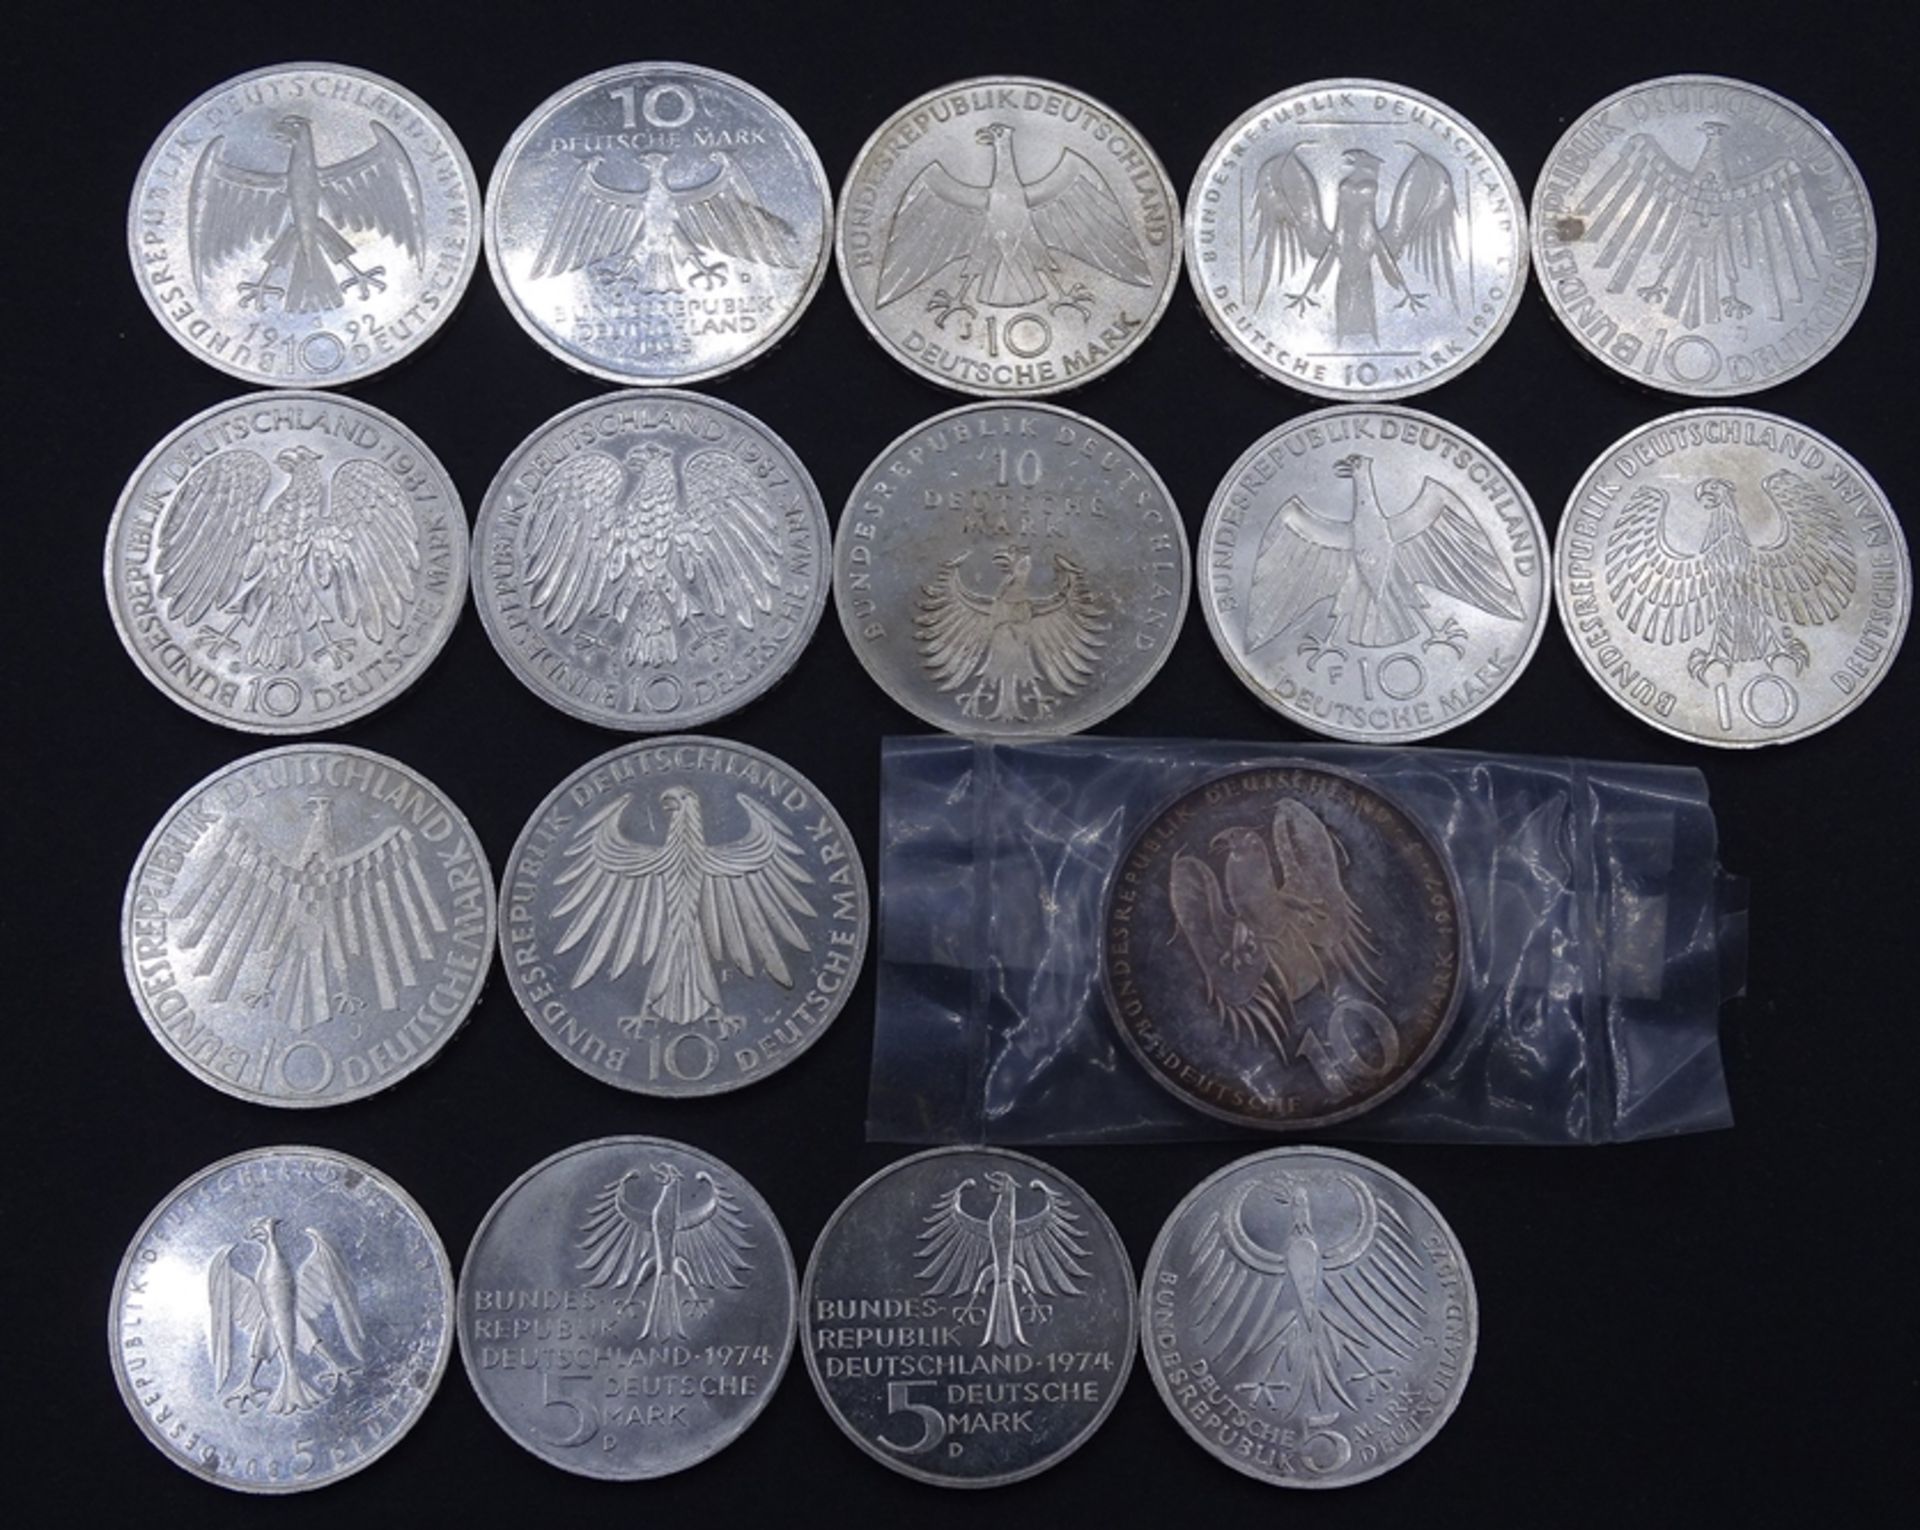 Konvolut Deutsche Mark Münzen, 13x 10 DM und 4x 5 DM = 150 Deutsche Mark, zus. 240g.